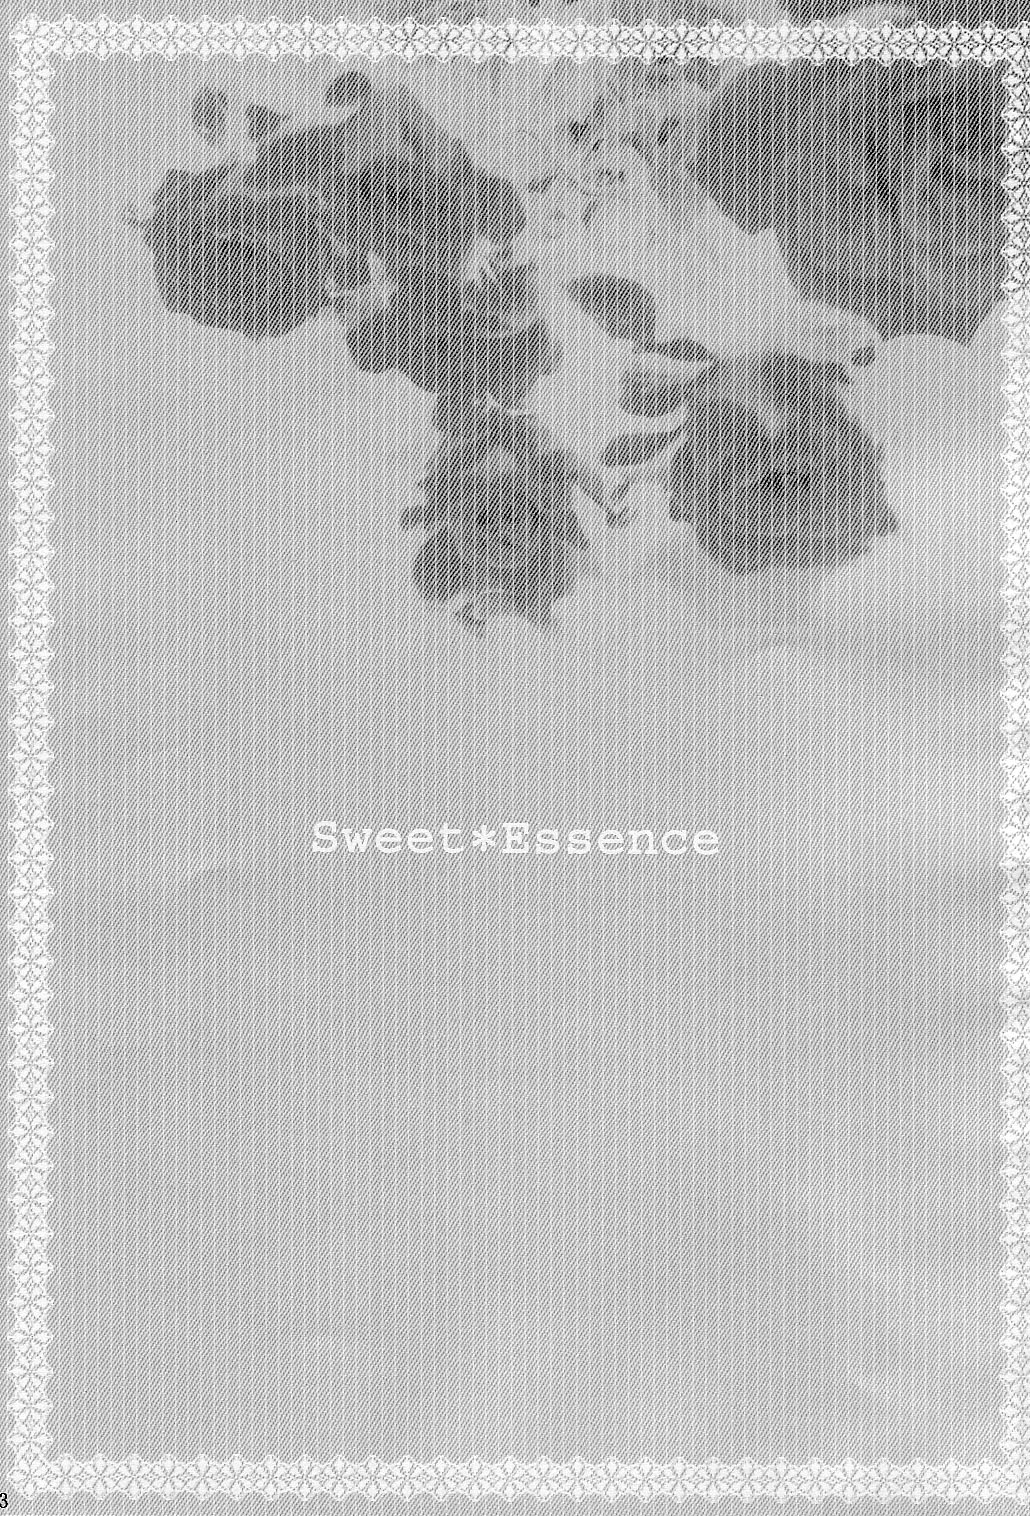 【みゆみゆプロジェクト】Sweet ＊エッセンス[1030x1512]（ラグナロクオンライン）